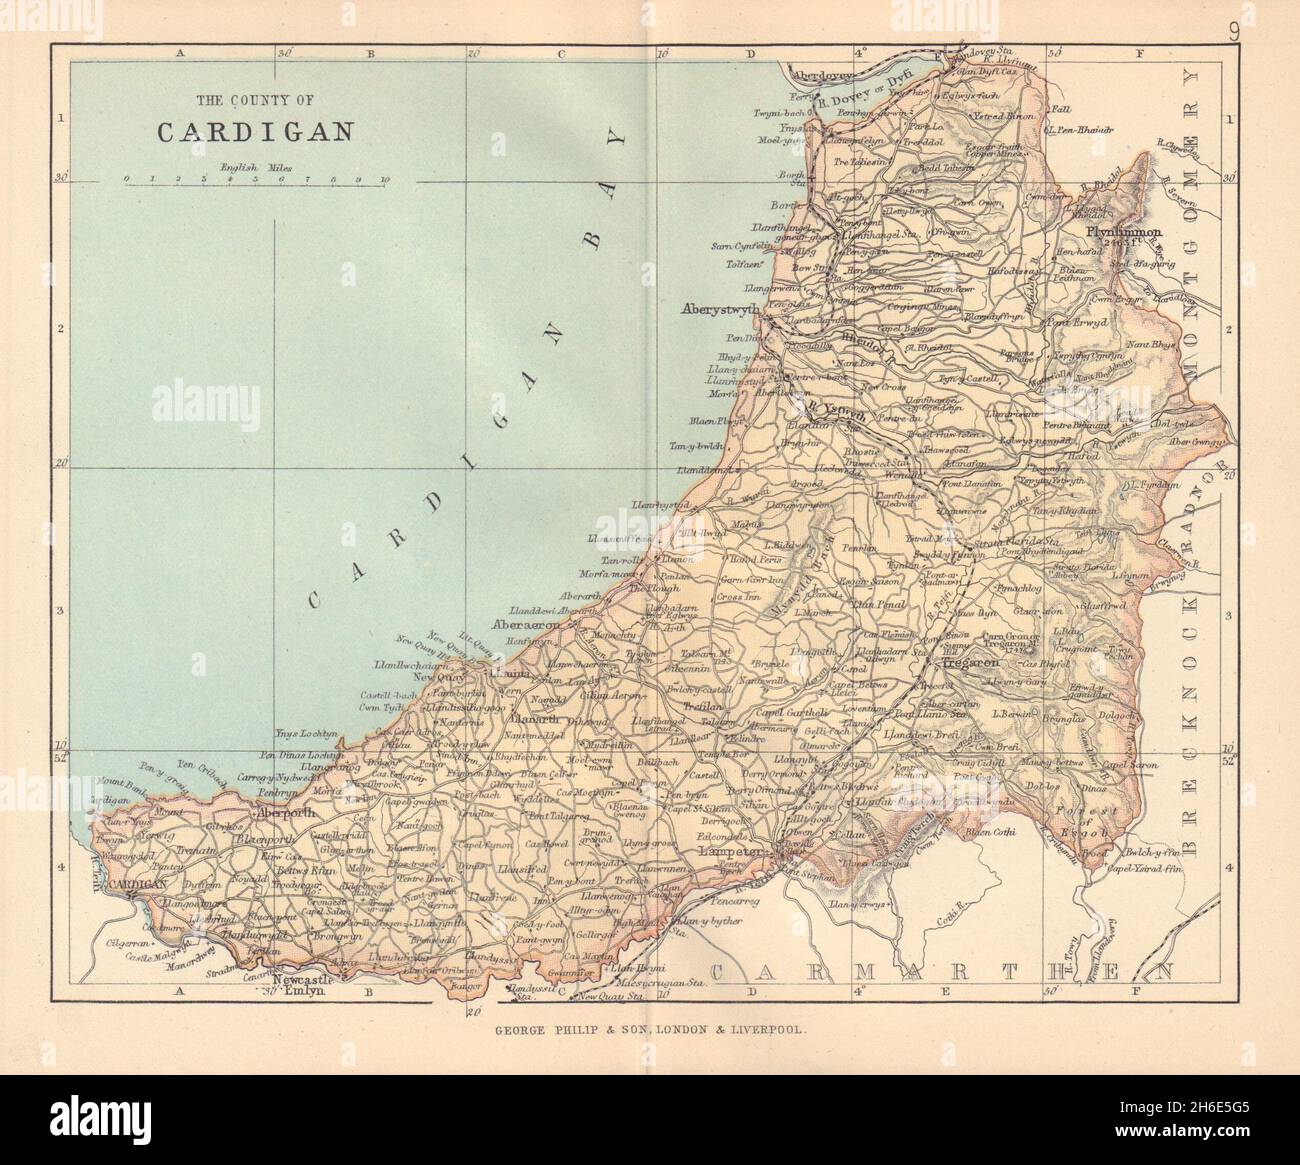 CARDIGANSHIRE 'The County of Cardigan' Aberystwyth Wales BARTHOLOMEW 1885 map Stock Photo